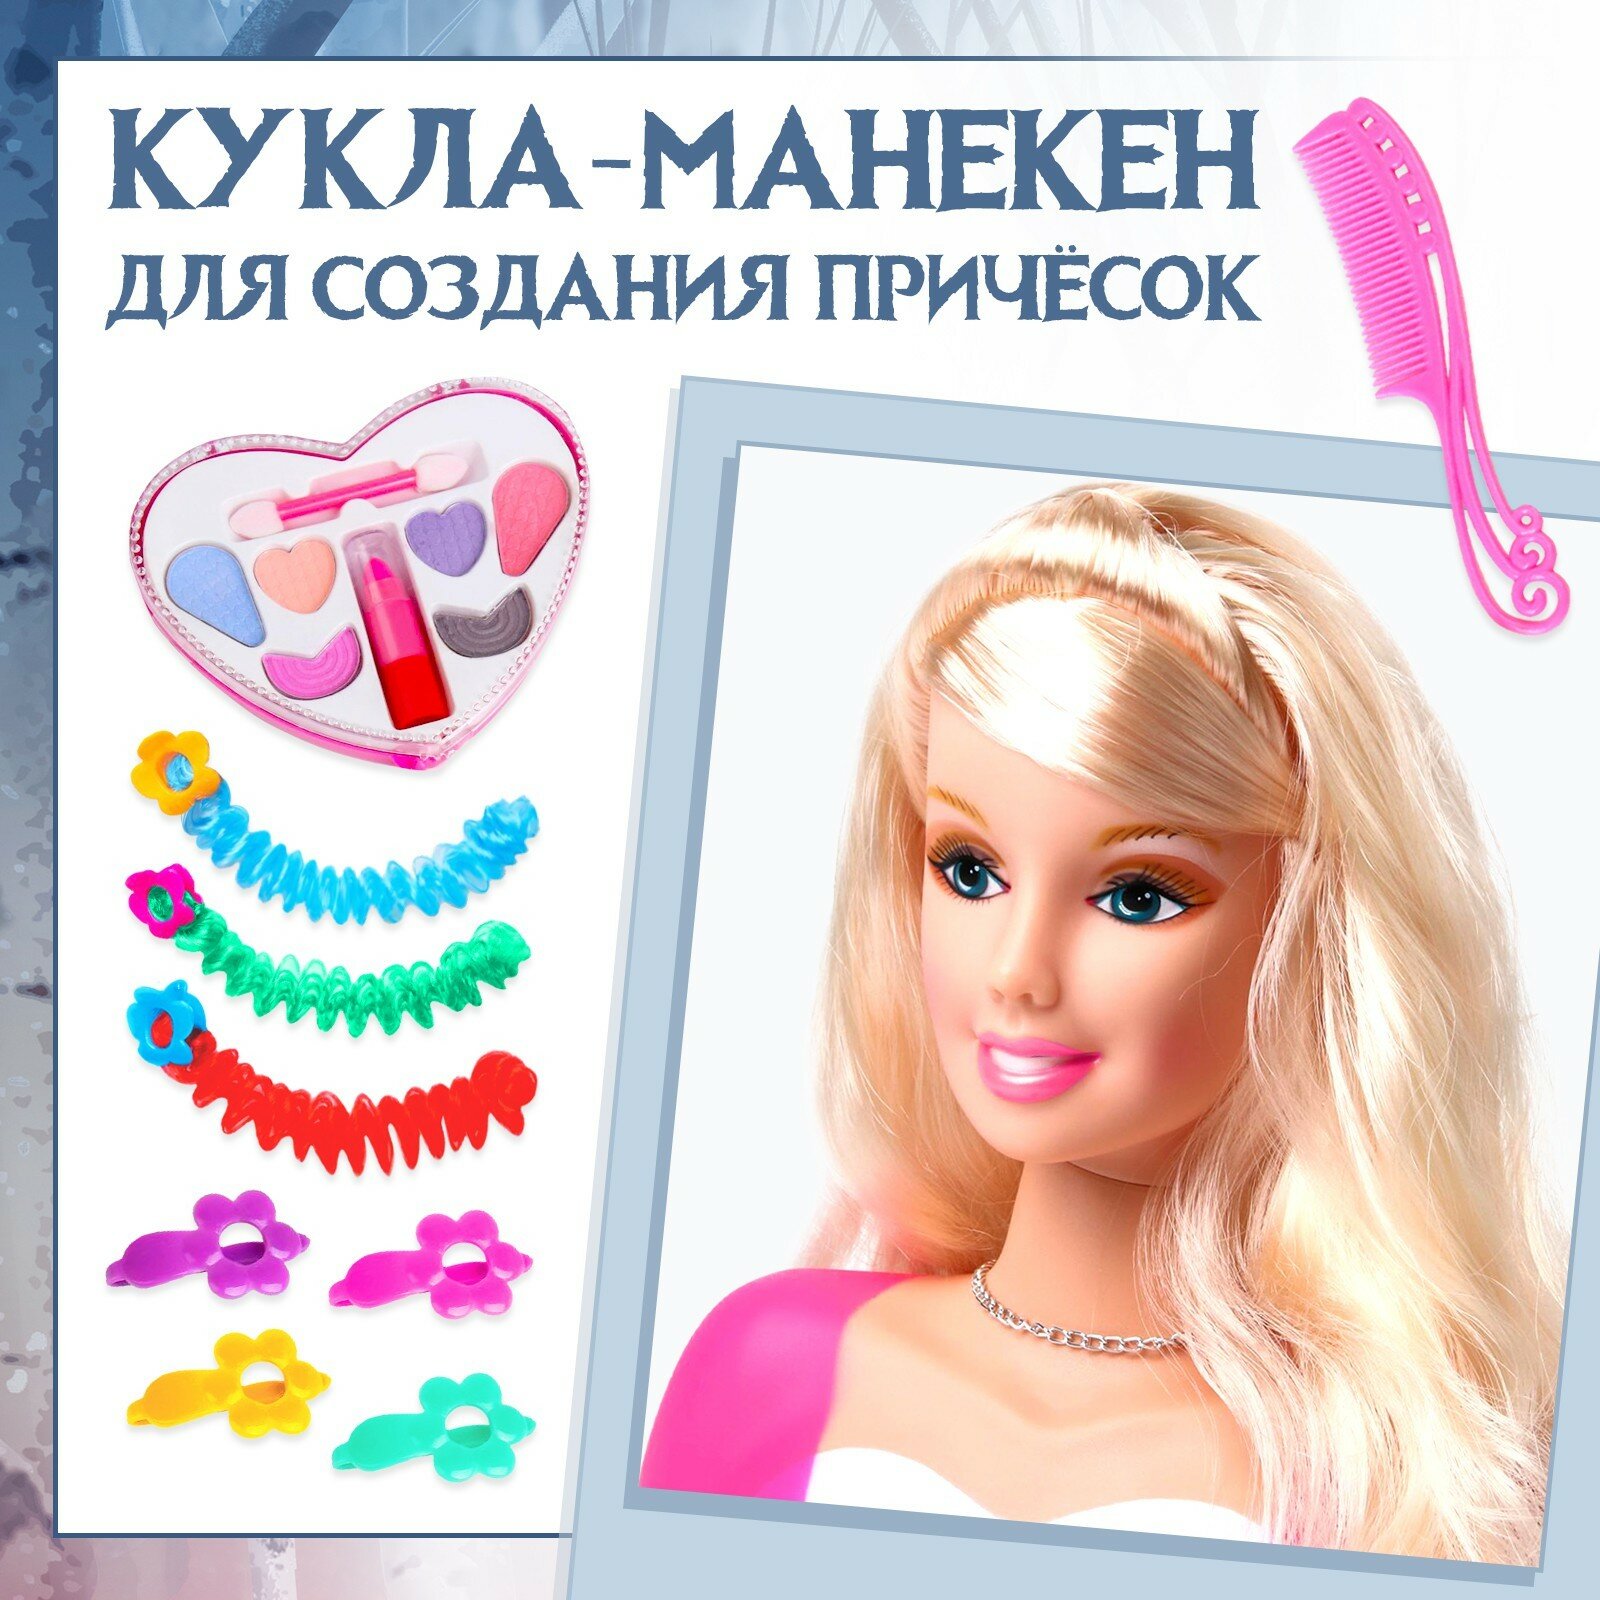 Игровой набор"Модный образ" кукла-манекен, Холодное сердце №SL-00830 2901050